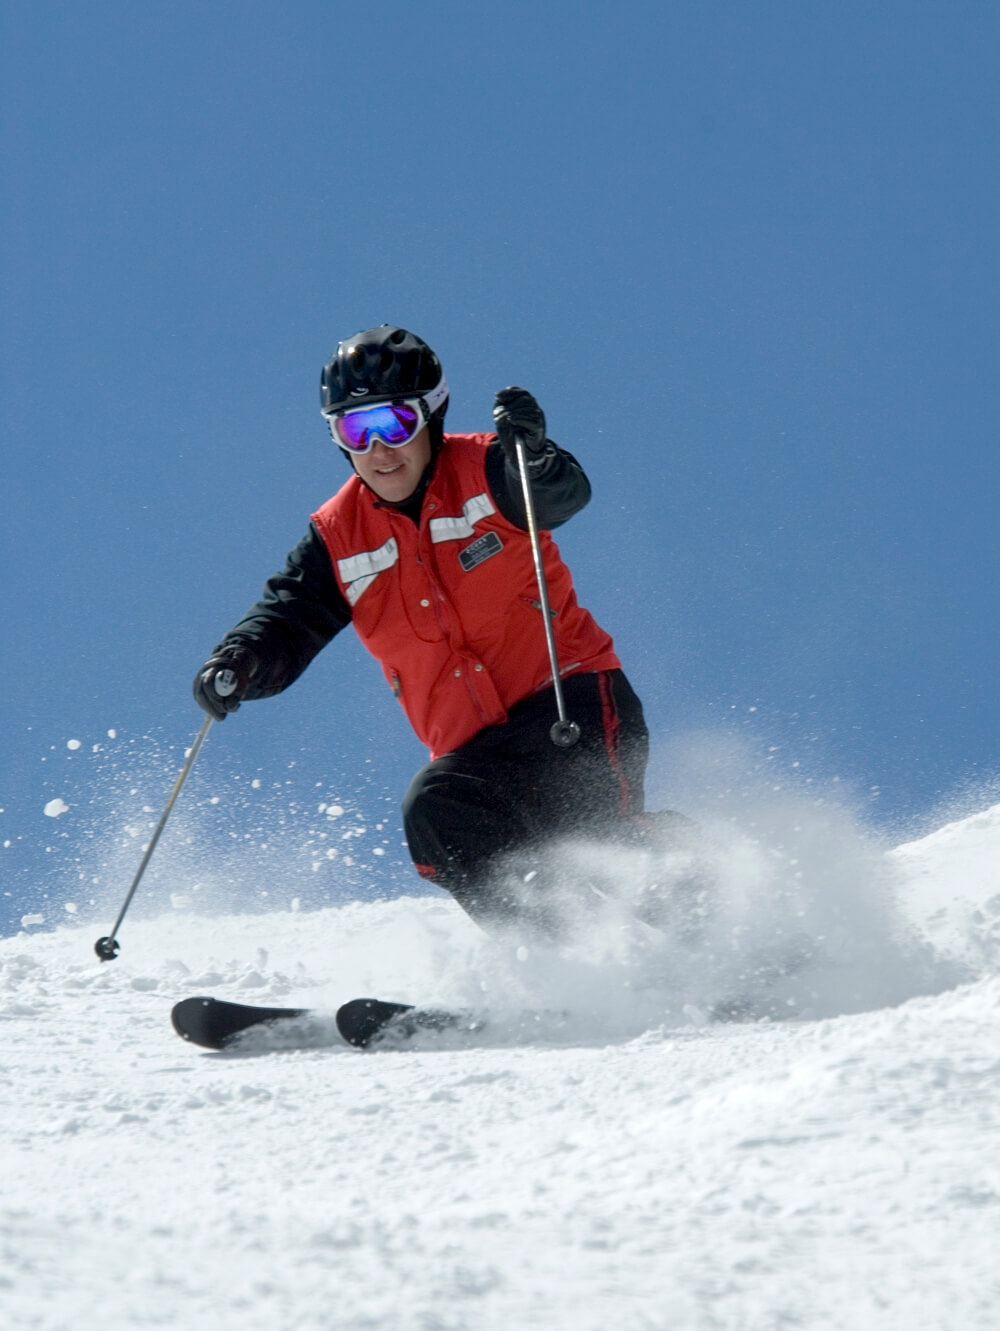 Rob Katz skiing